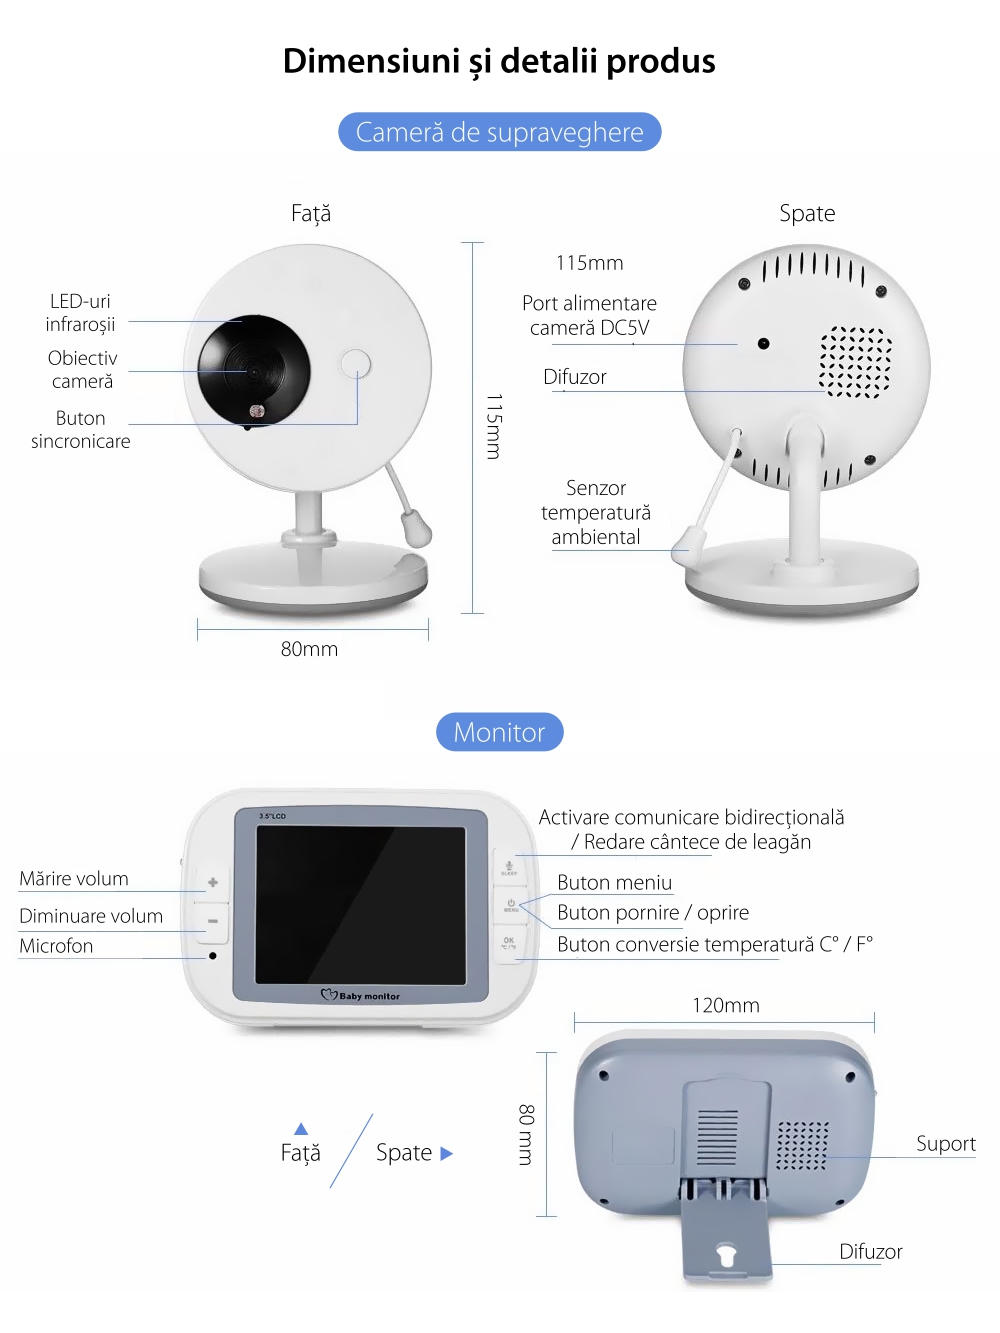 Baby Monitor Wireless 851, Monitorizare Audio – Video, Monitorizare temperatura, Comunicare bidirectionala, Cantece de leagan, Night Vision, Baterie incorporata